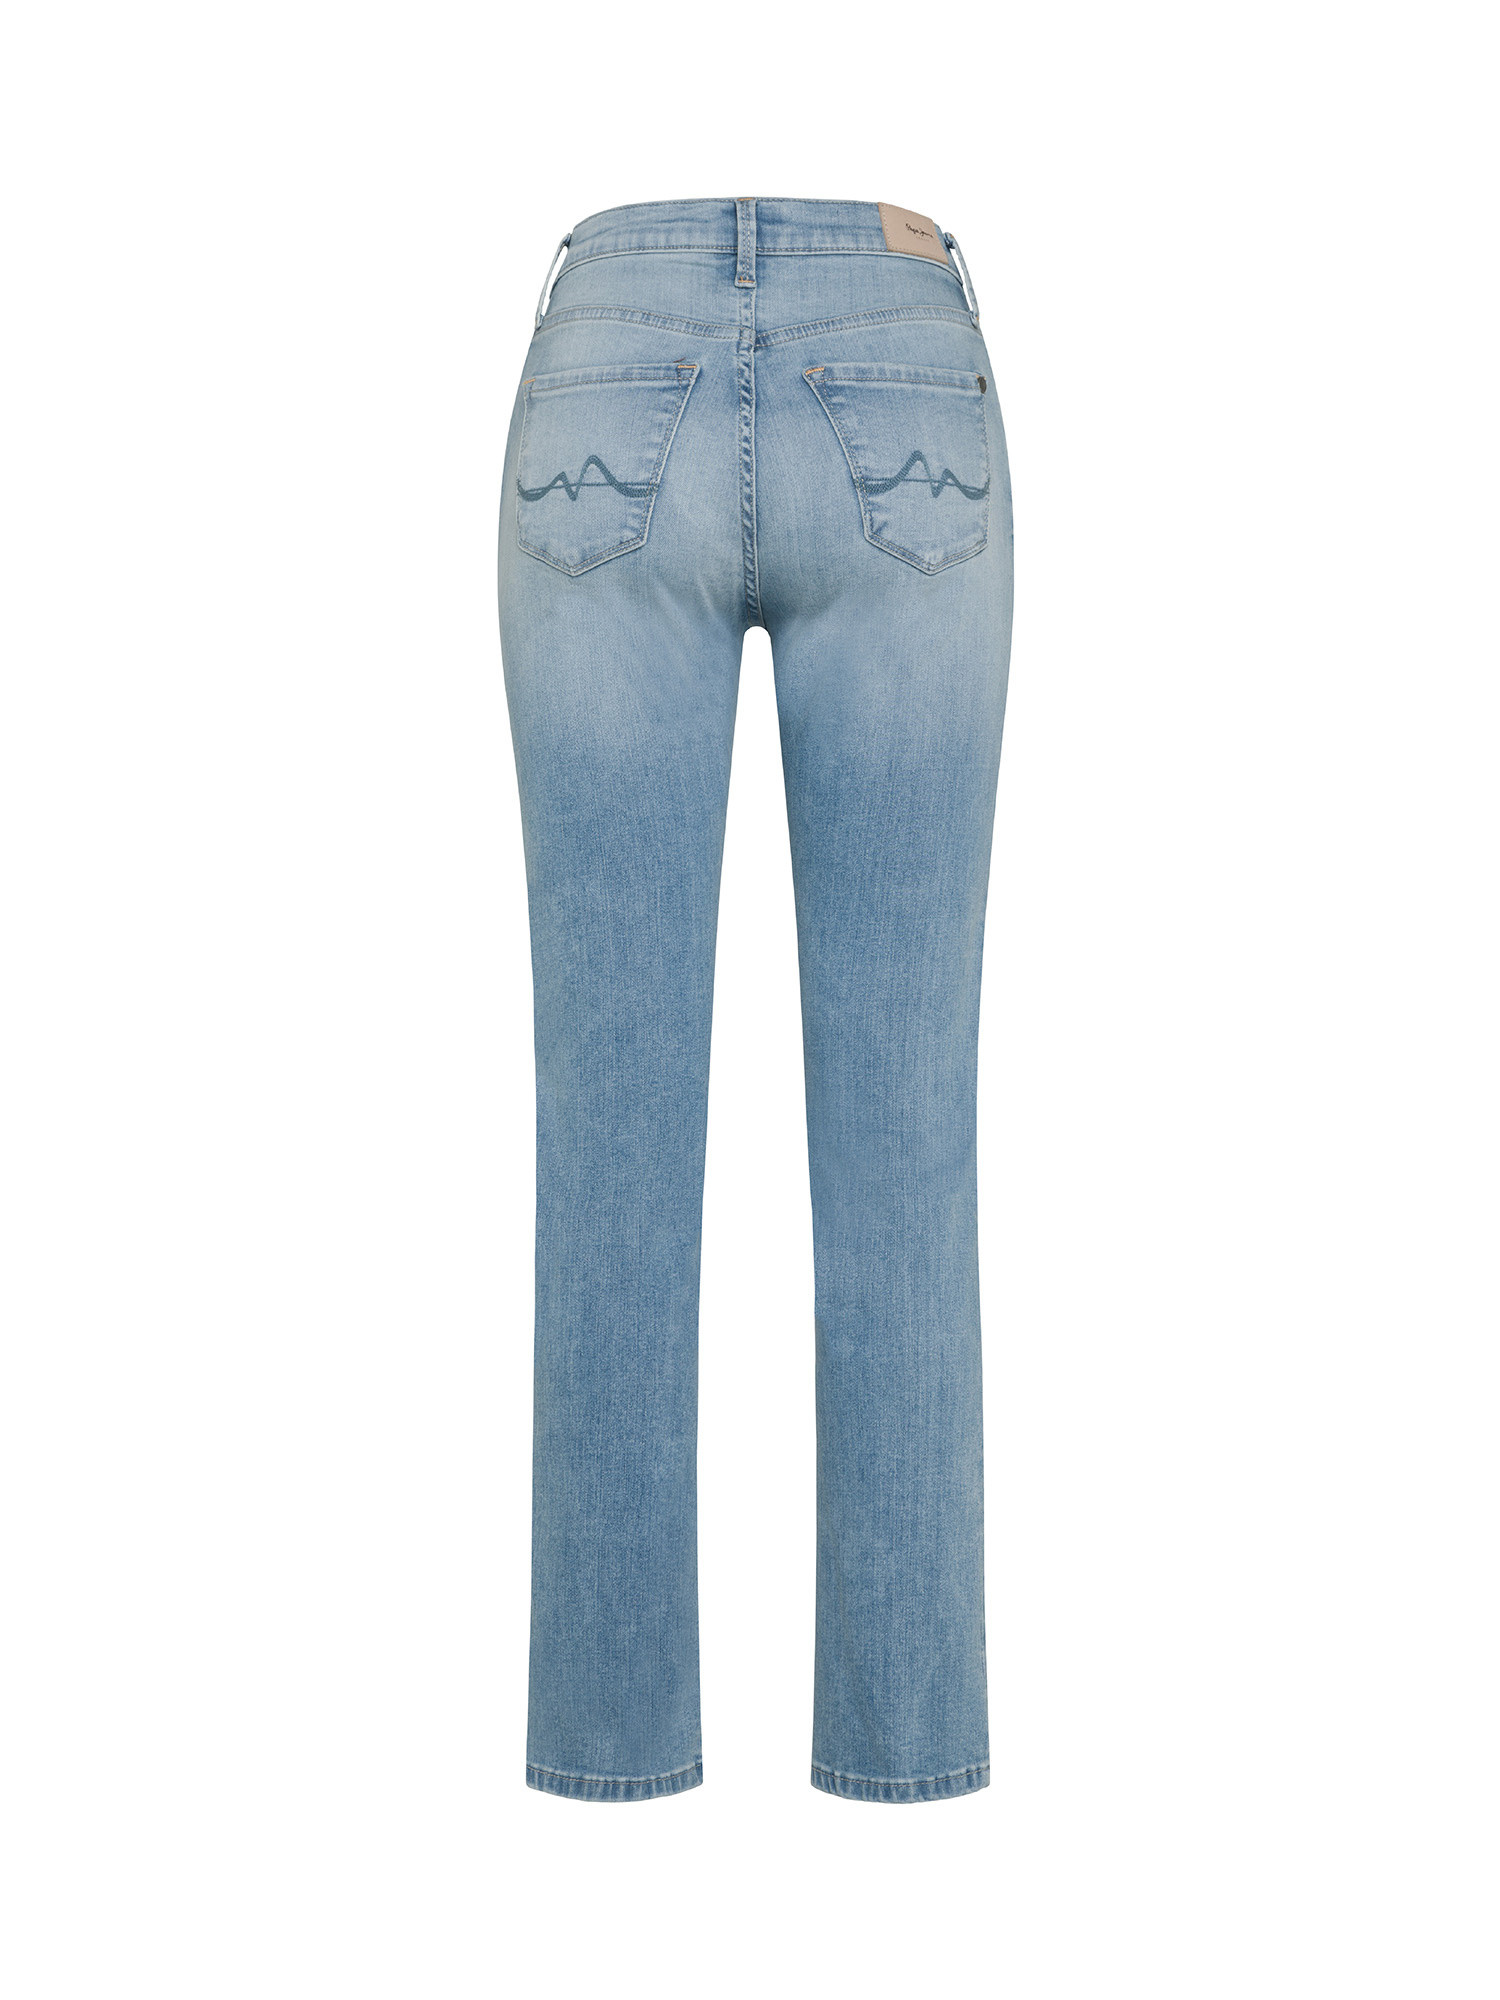 Pepe Jeans - Five pocket jeans, Light Blue, large image number 1